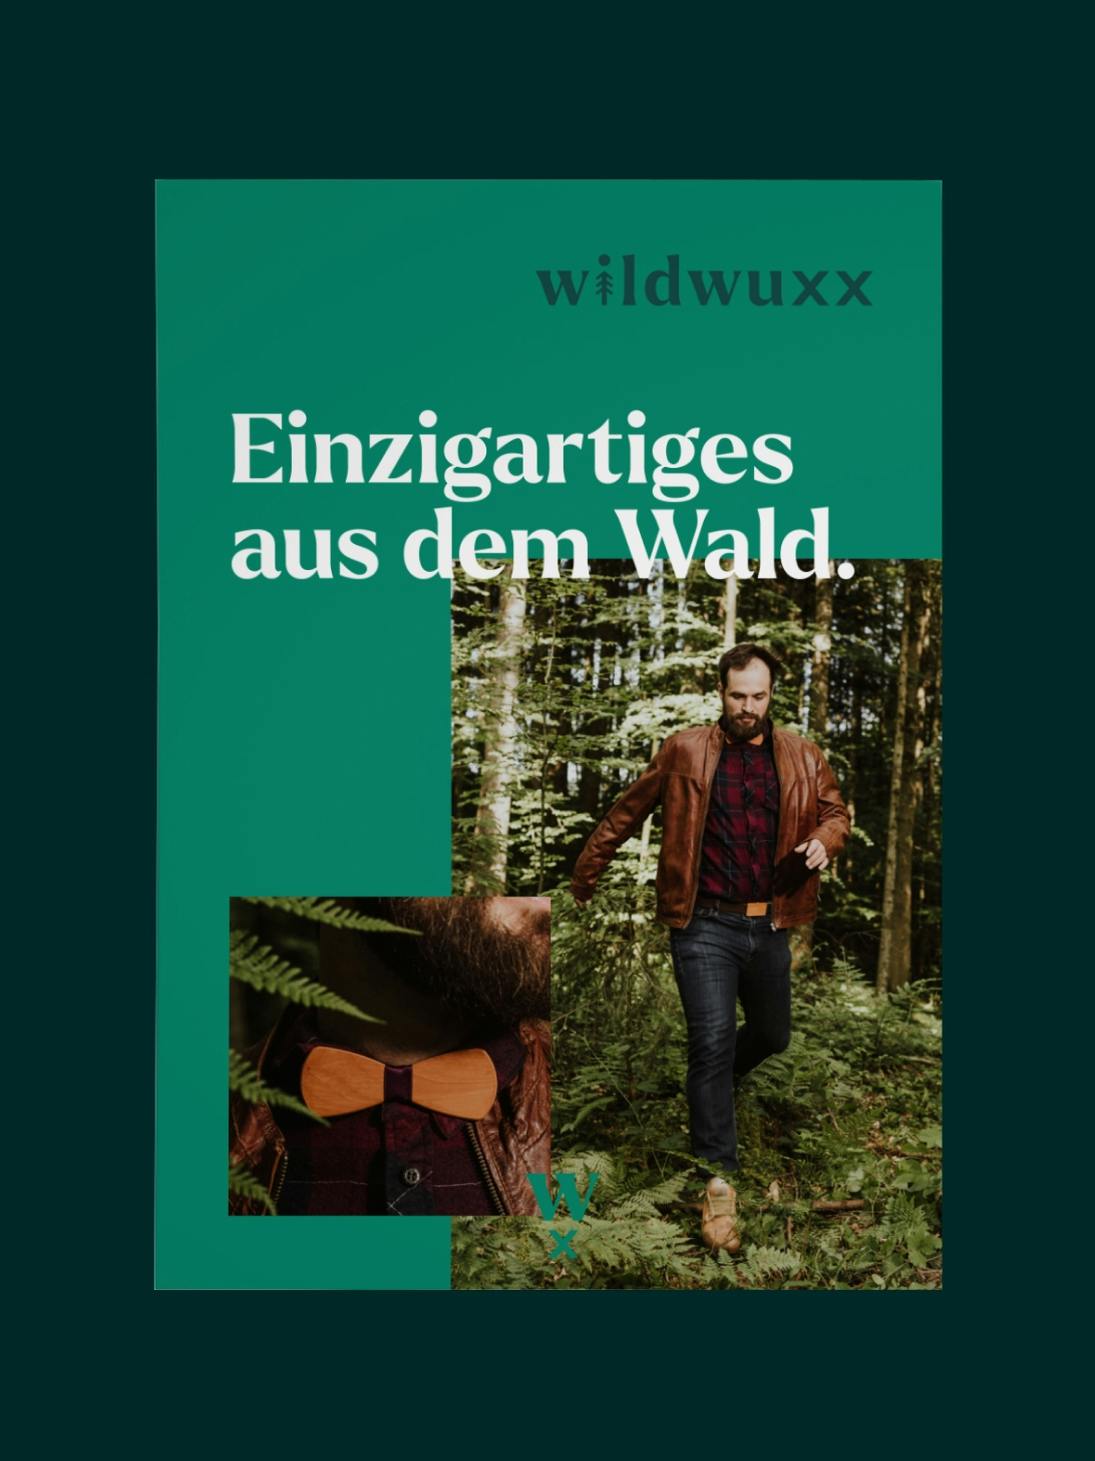 Grüne Postkarte mit Wildwuxx Logo und zwei Bildern, ein Mann springt durch den Wald und eine Detailaufnahme, die seine Fliege zeigt © good matters